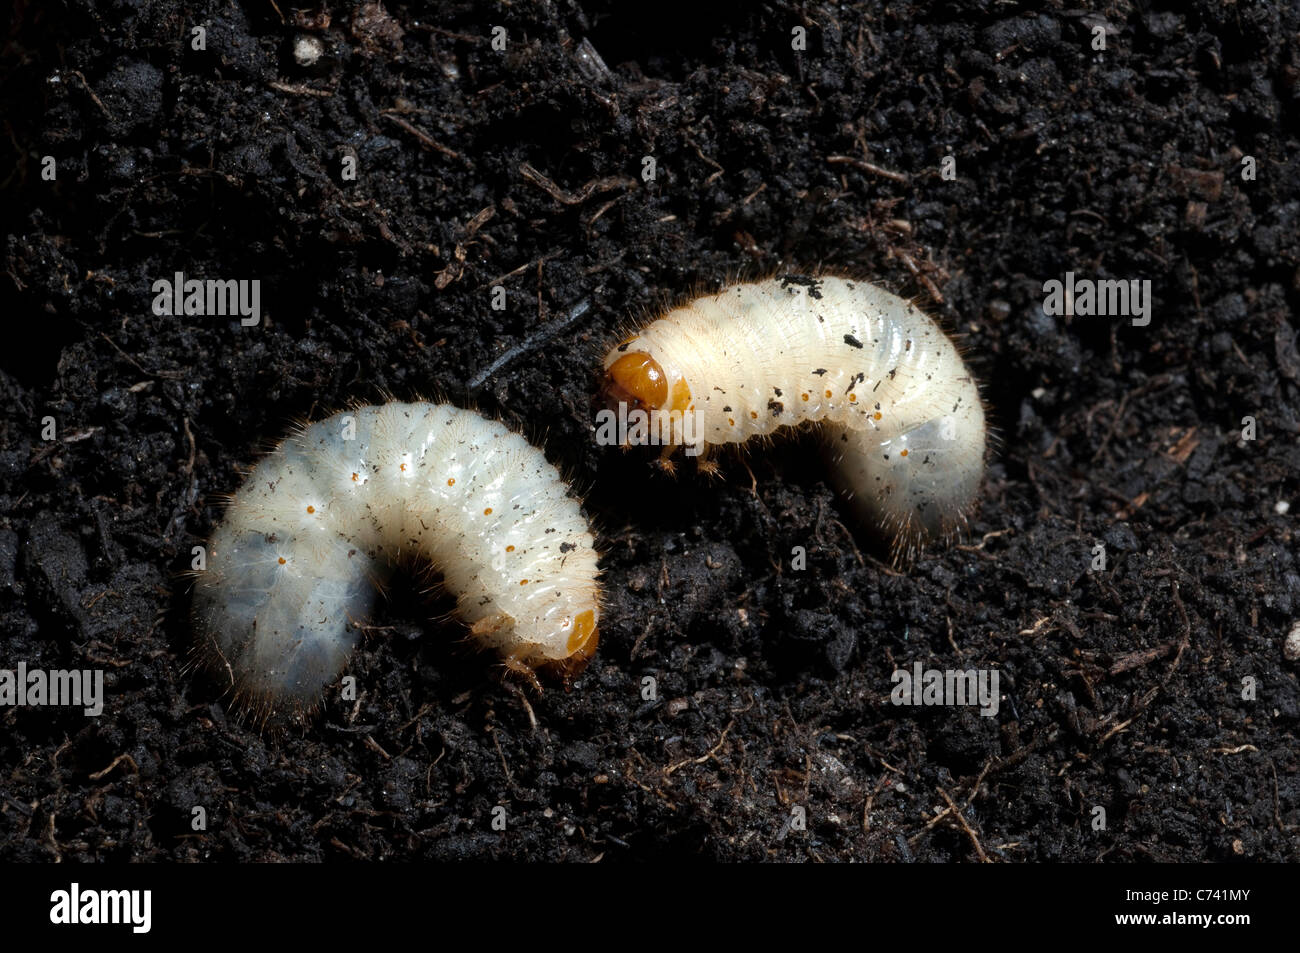 Rose Chafer (Cetonia aurata), larvae in soil. Stock Photo